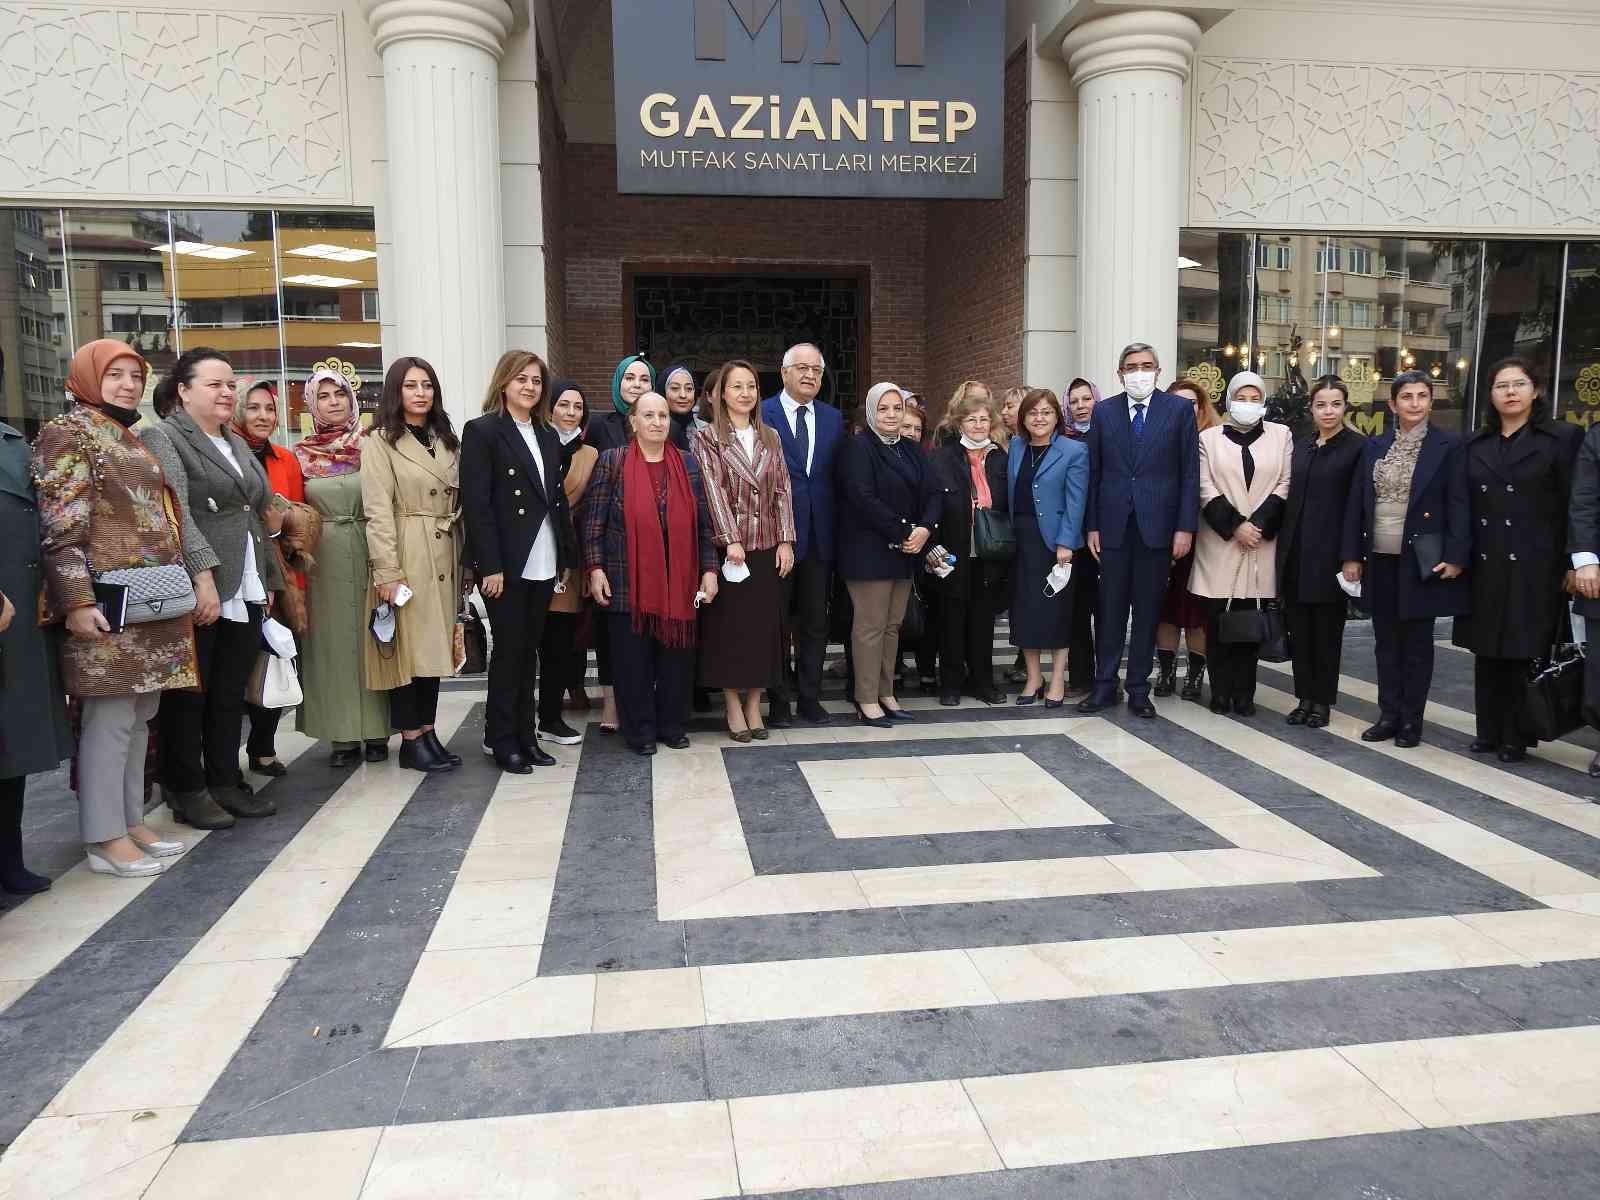 AK Parti Kadın Kolları yönetimi Gaziantep’te kadınlarla bir araya geldi #gaziantep